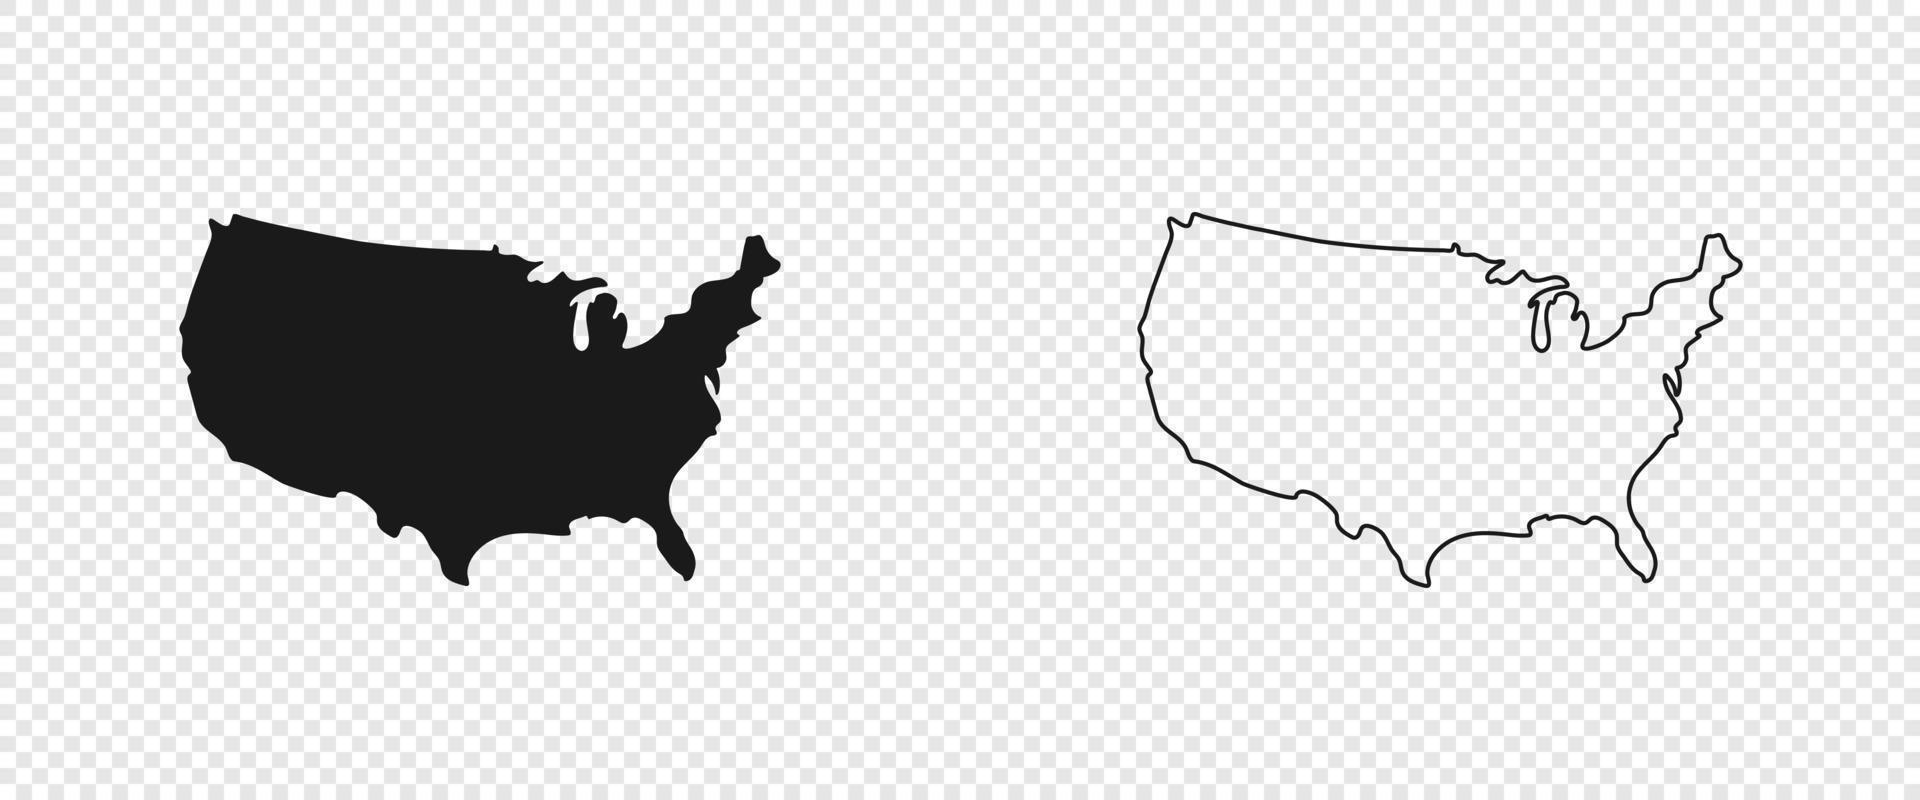 mapa de estados unidos mapa americano. mapa de estados unidos de américa en diseño plano y de líneas. eps10 vector